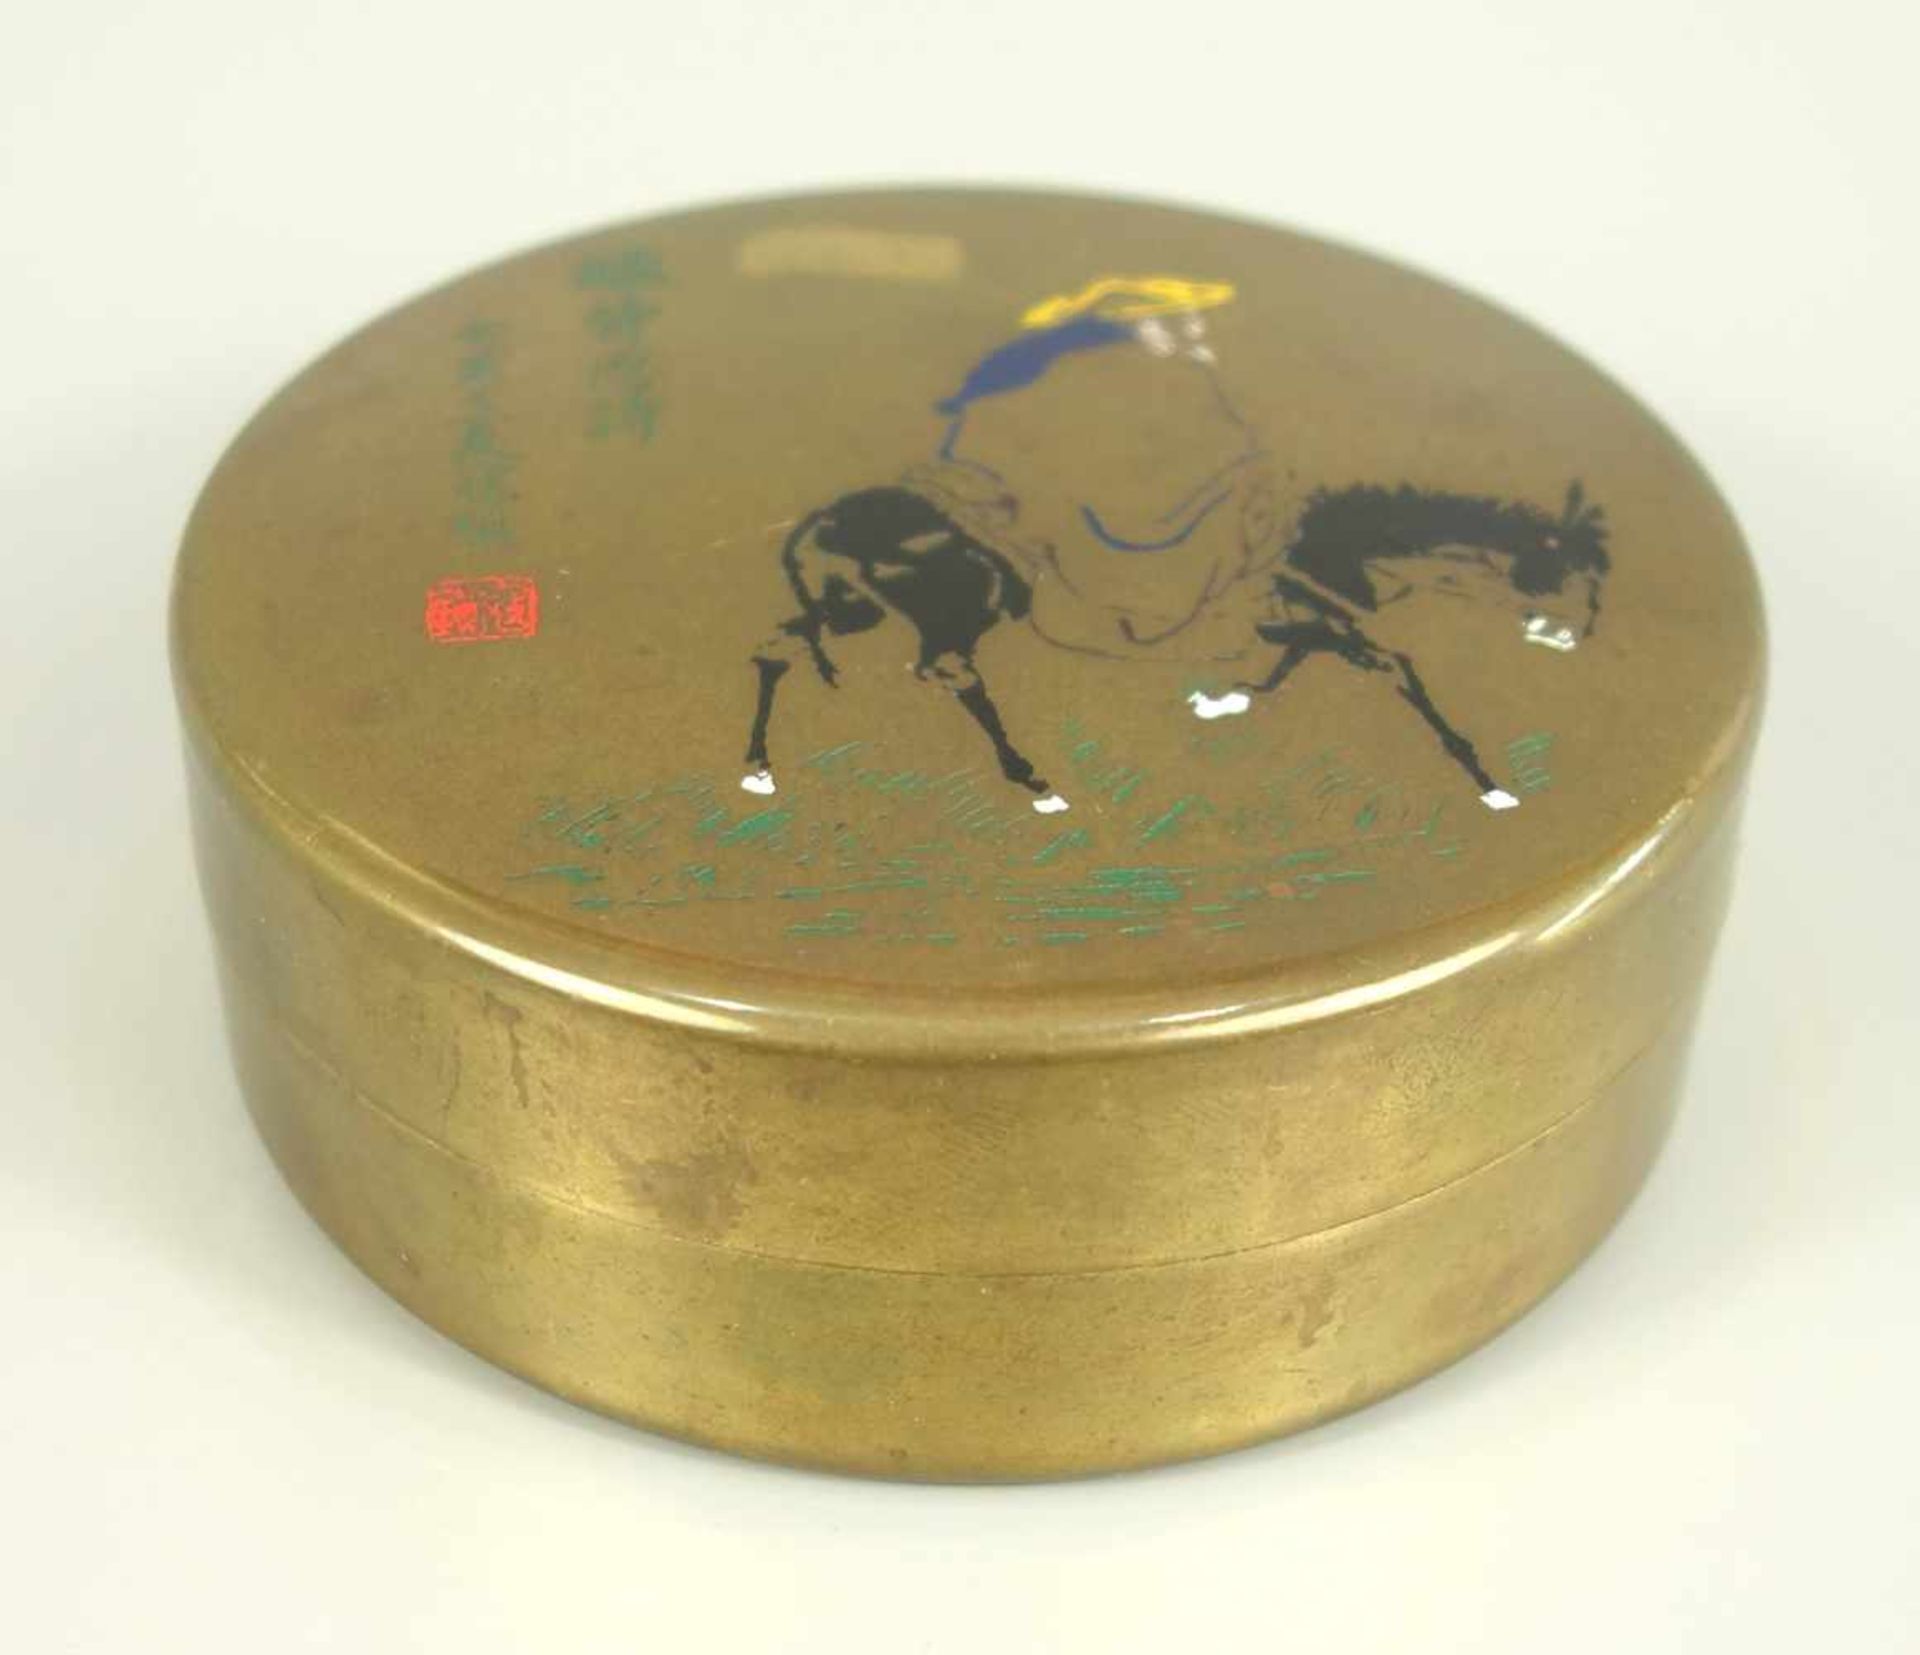 Tusche- Dose, China, wohl 1. Hälfte 20. Jh., Messing mit Emaillemalerei, innen mit Reibestein, - Bild 2 aus 3